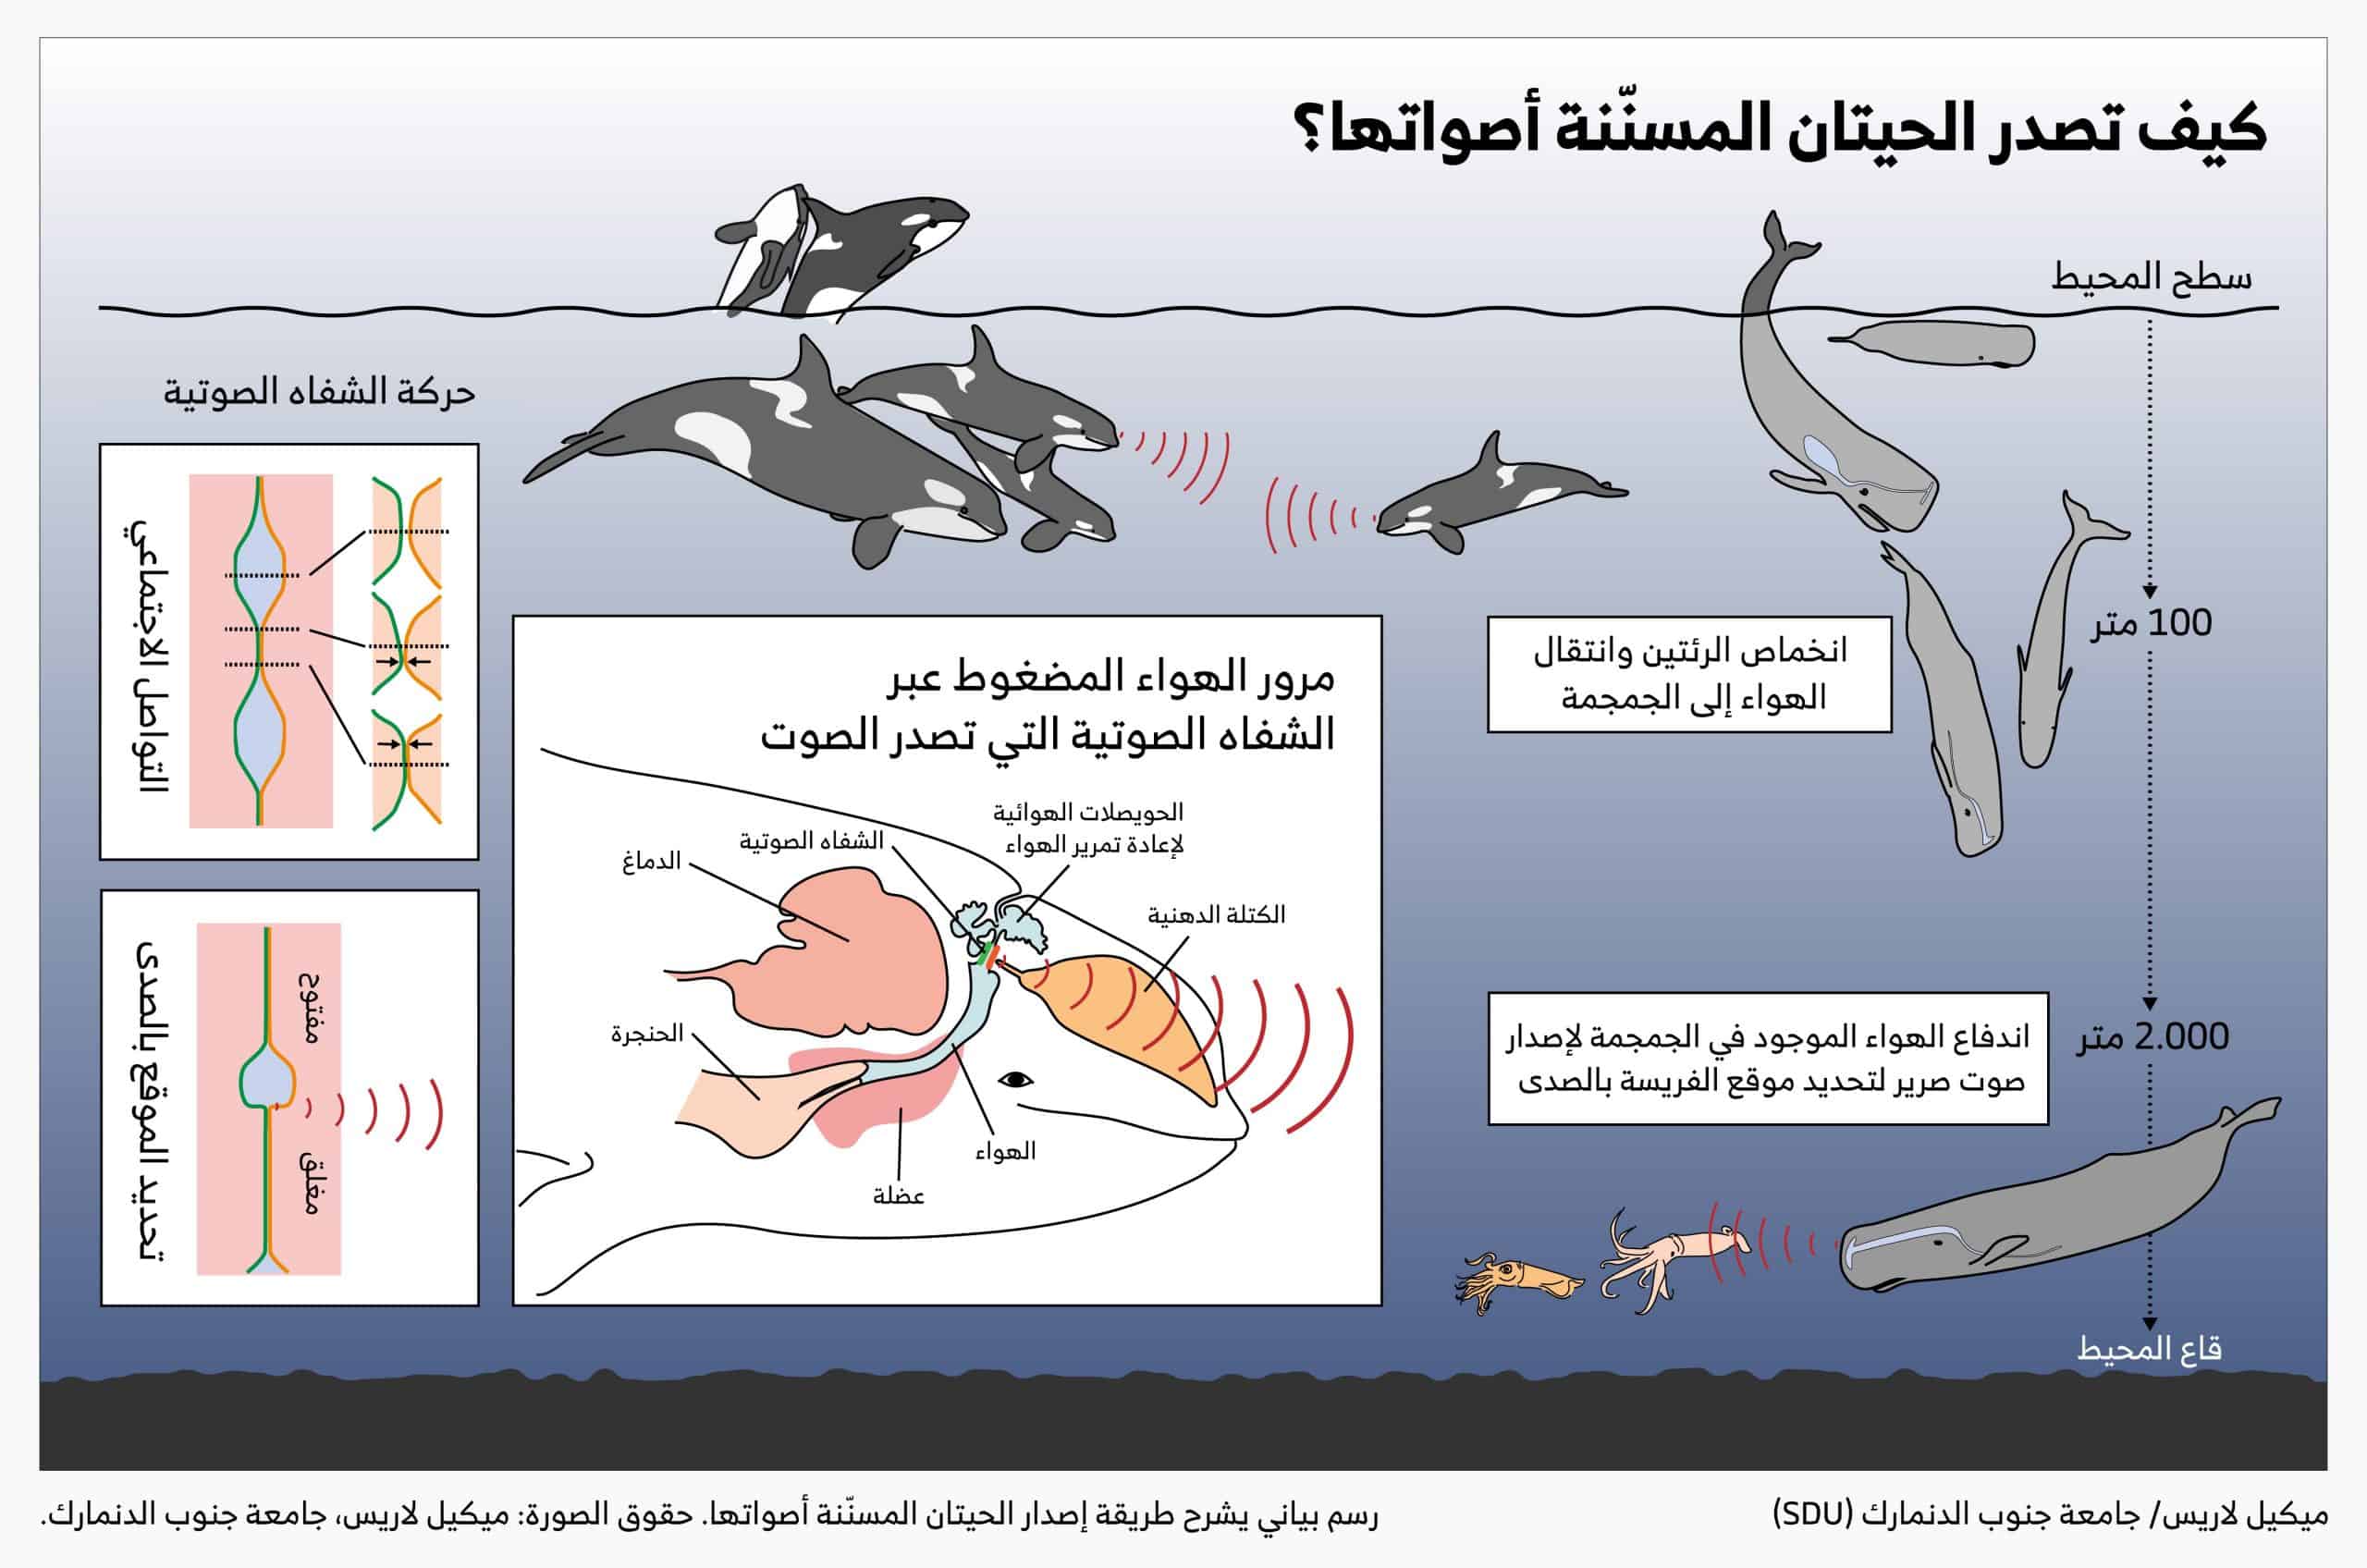 رسم بياني يشرح طريقة إصدار الحيتان المسنّنة أصواتها. حقوق الصورة: ميكيل لاريس، جامعة جنوب الدنمارك.